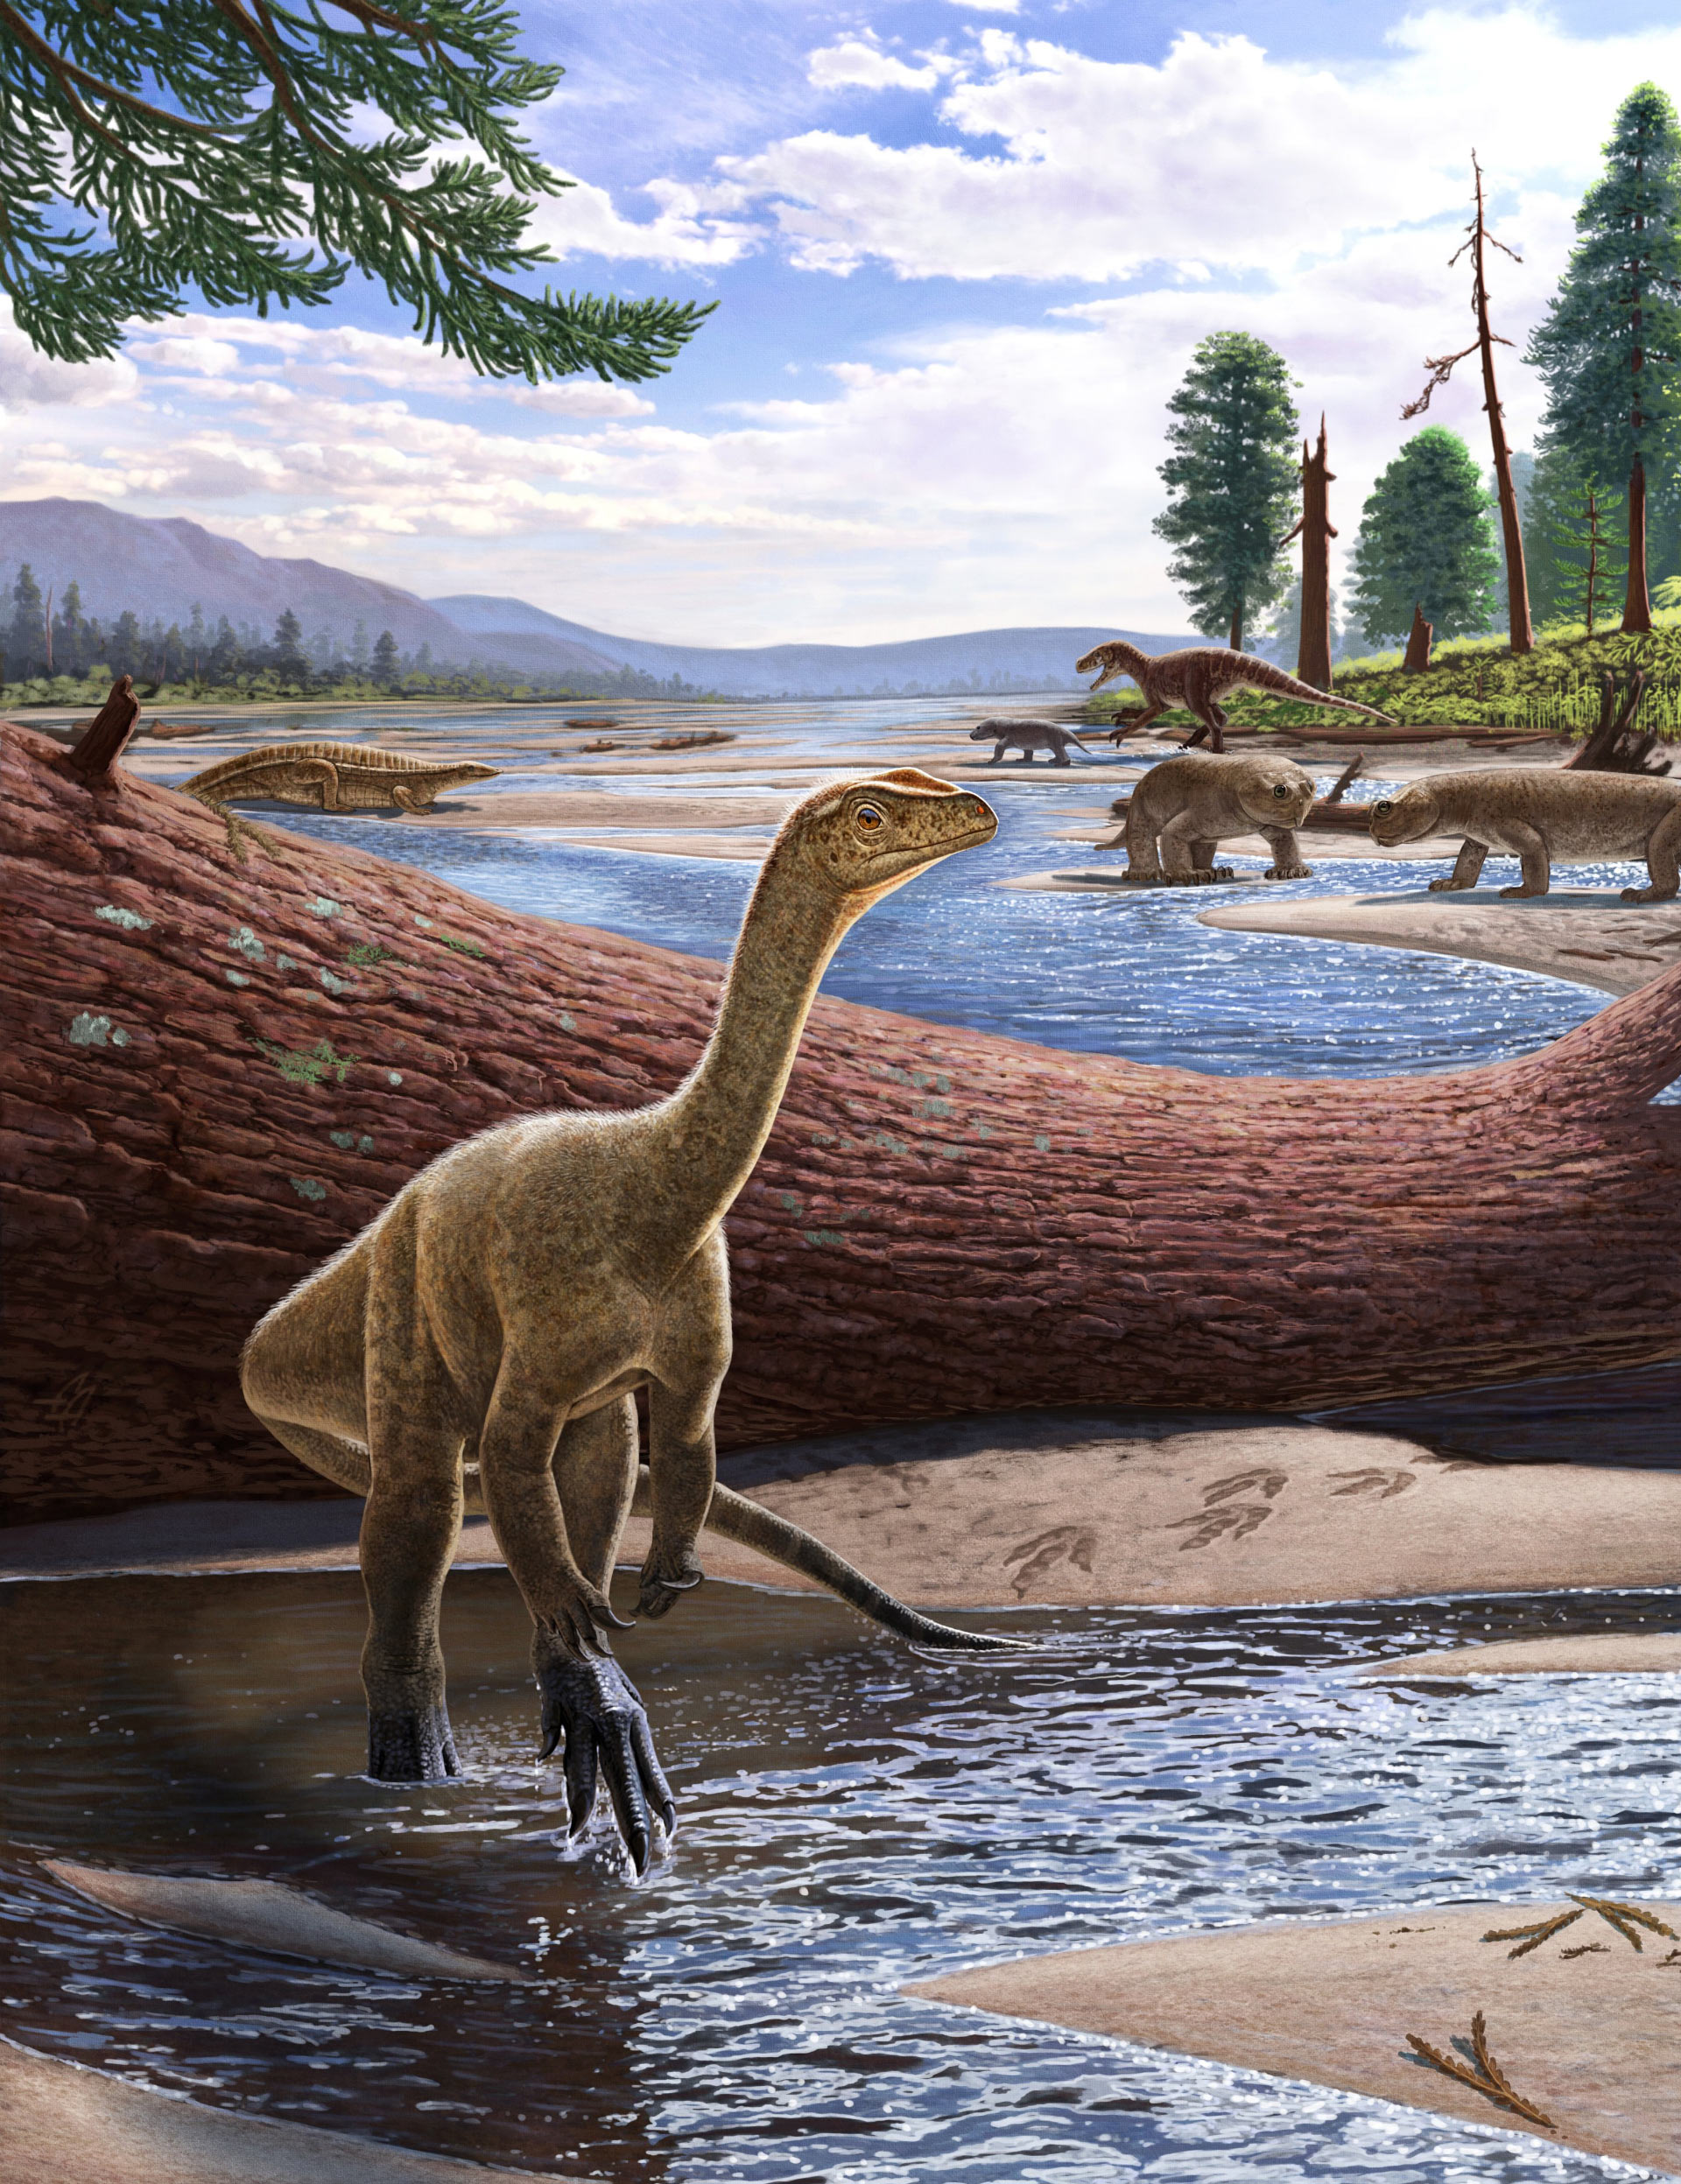 Hóa thạch khủng long hoàn chỉnh và lâu đời nhất của Châu Phi được tìm thấy ở Zimbabwe!  - Ảnh 3.